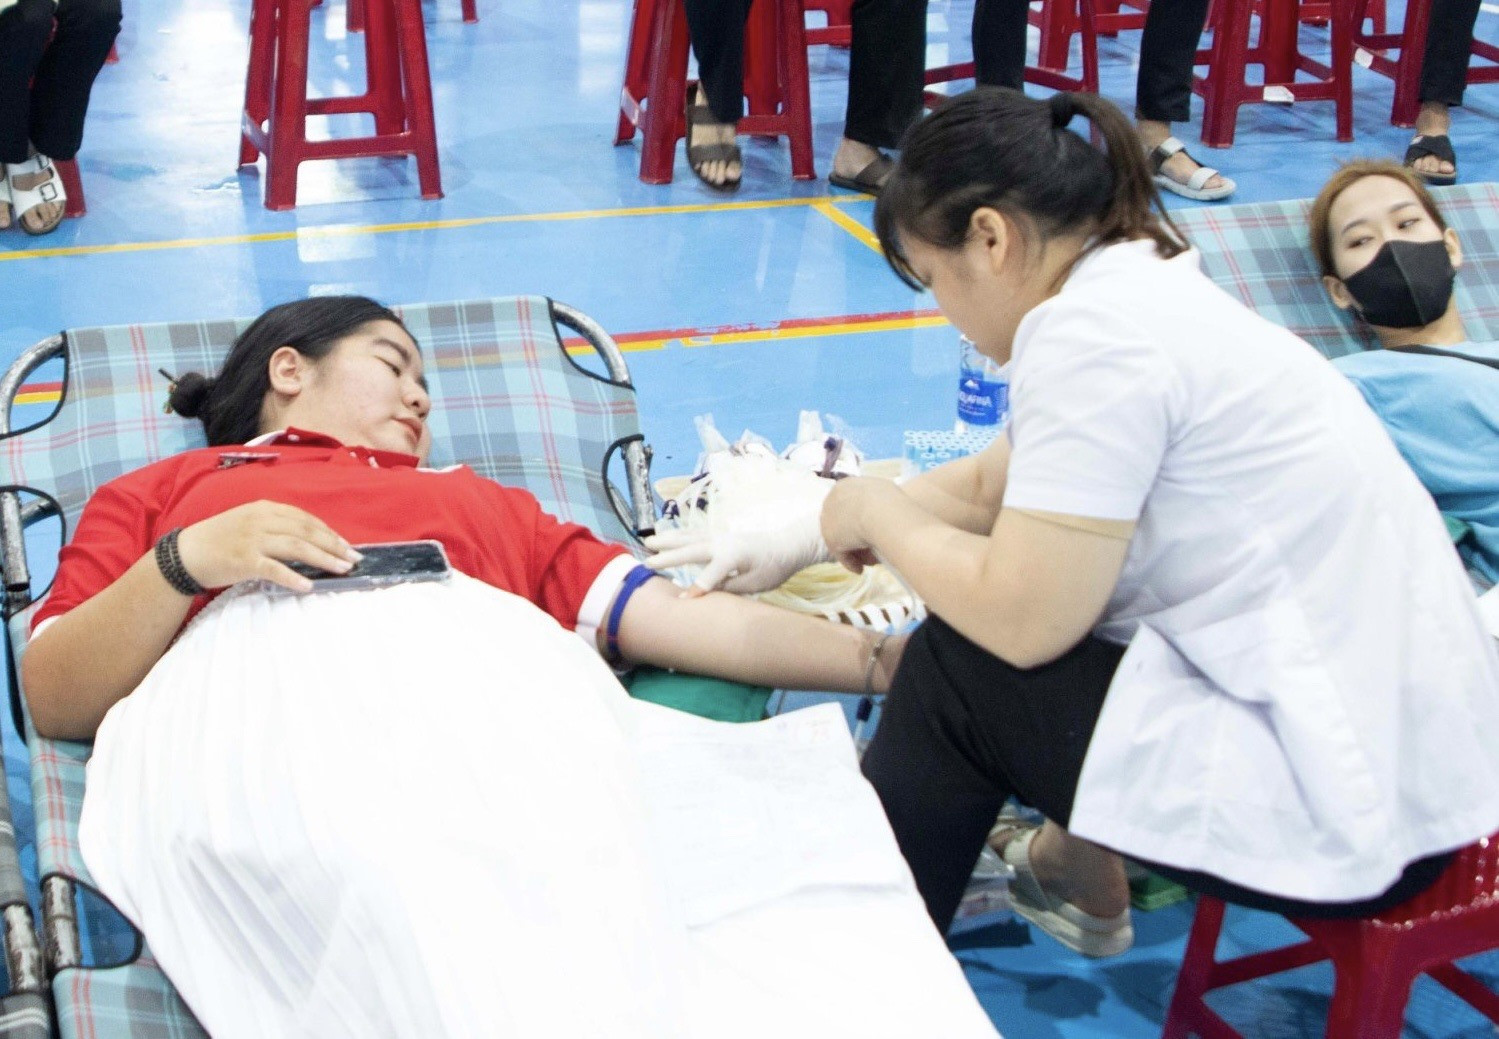 Phân viện Học viện Hành chính Quốc gia khu vực miền Trung tổ chức hiến máu tình nguyện. Ảnh: K.L